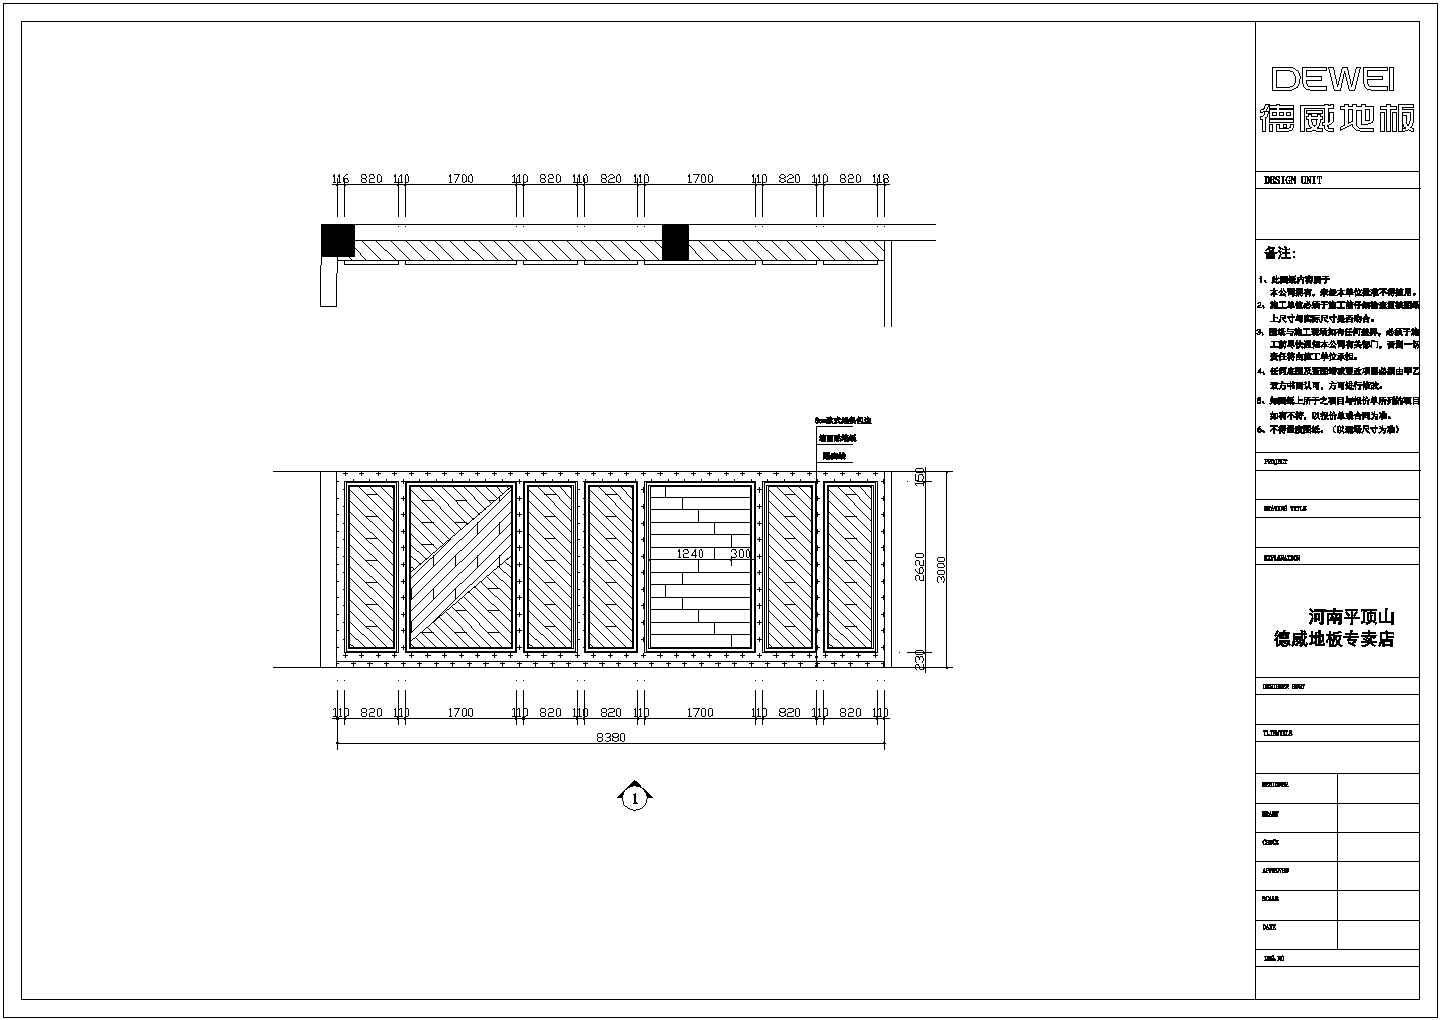 某商场地板专卖店装修详细方案设计施工CAD图纸